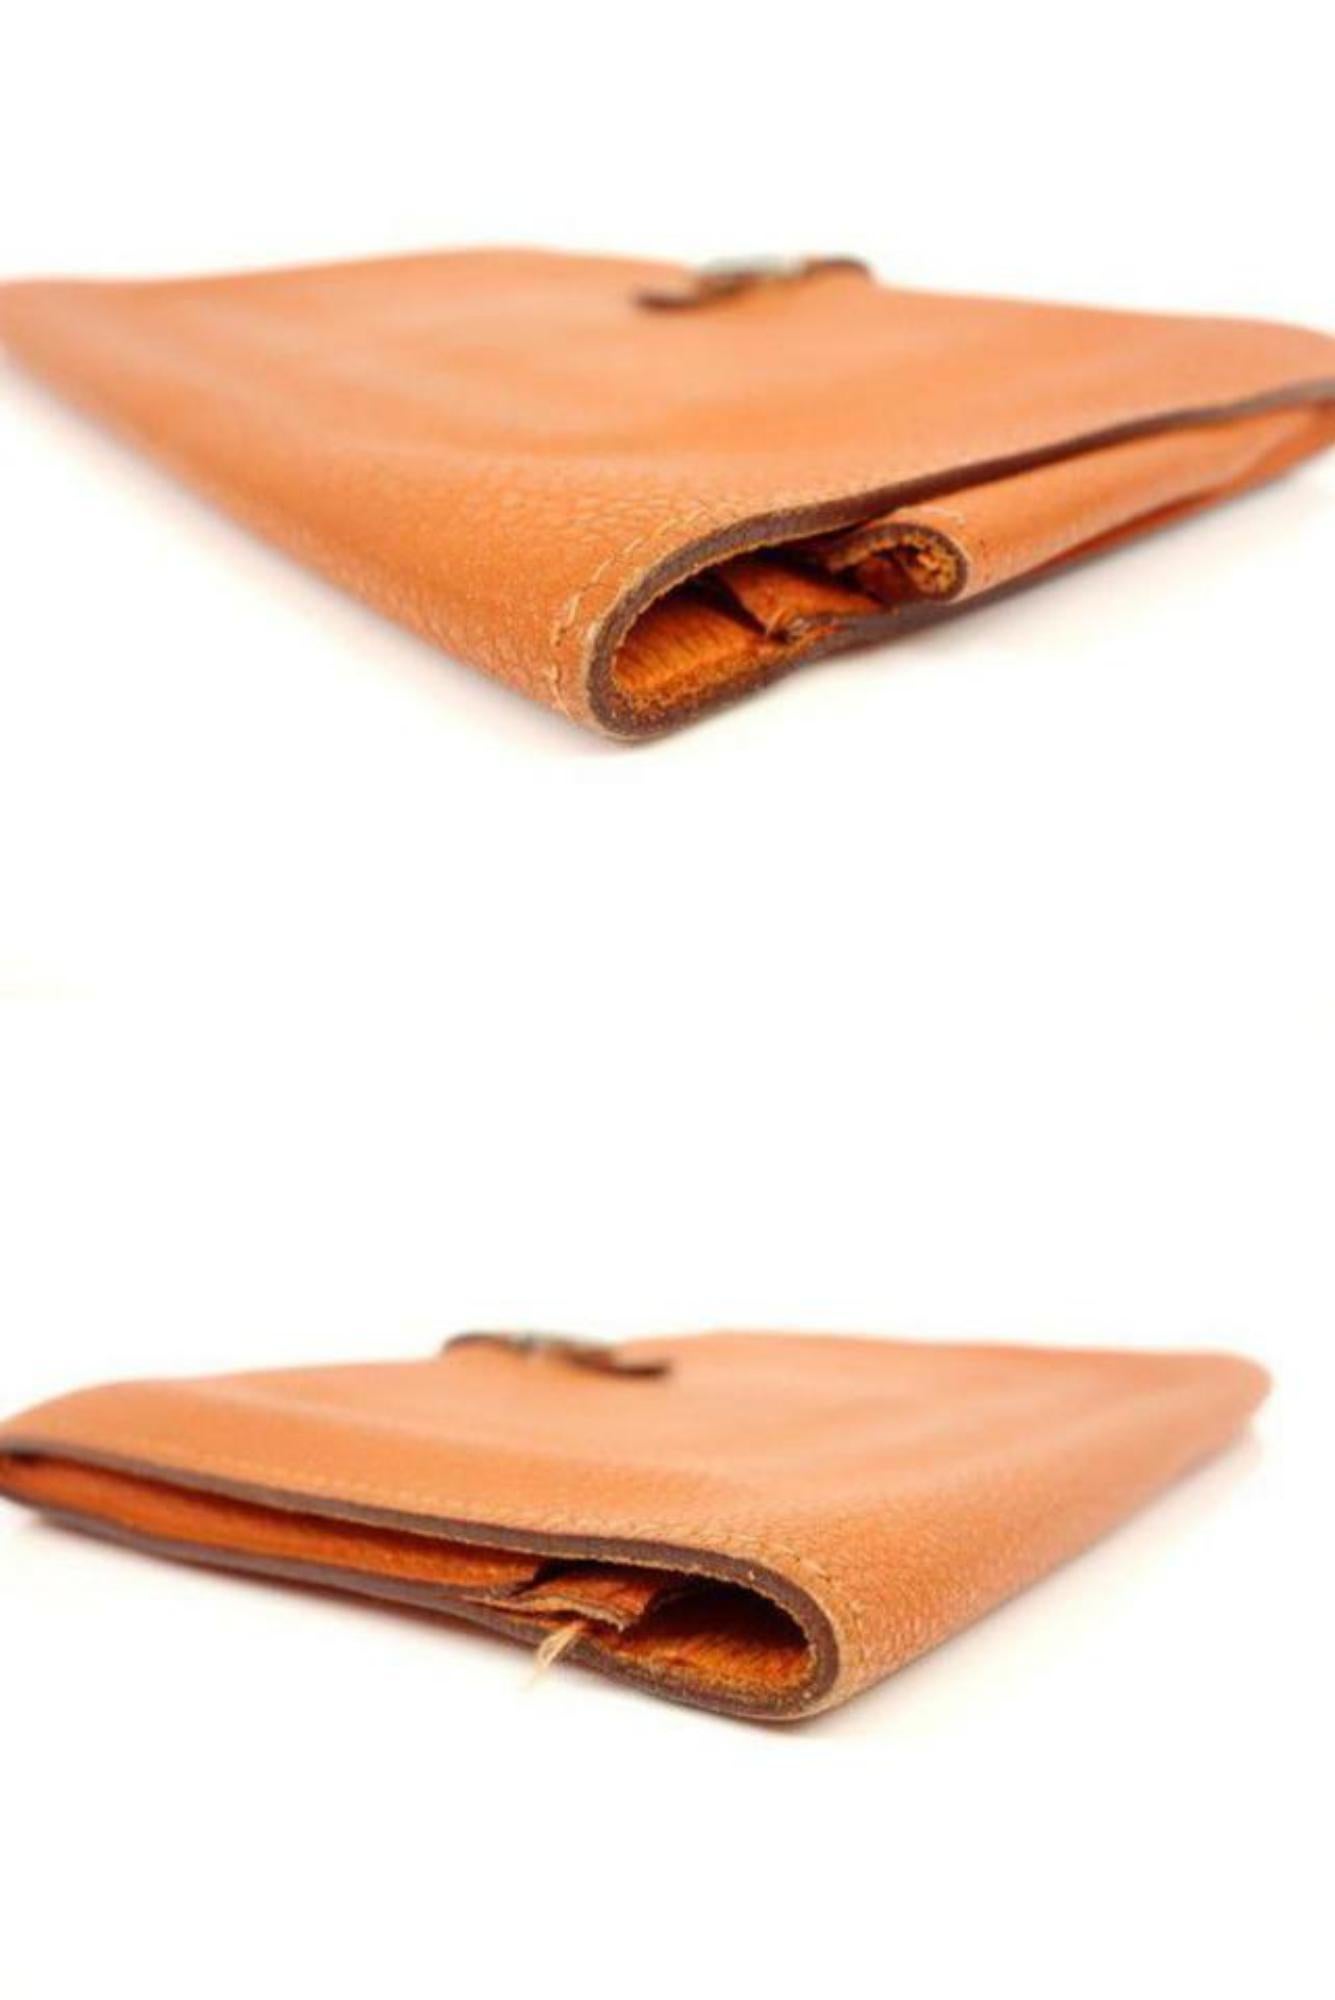 Hermès Orange Togo Leather Dogon Wallet 232H857 For Sale 1